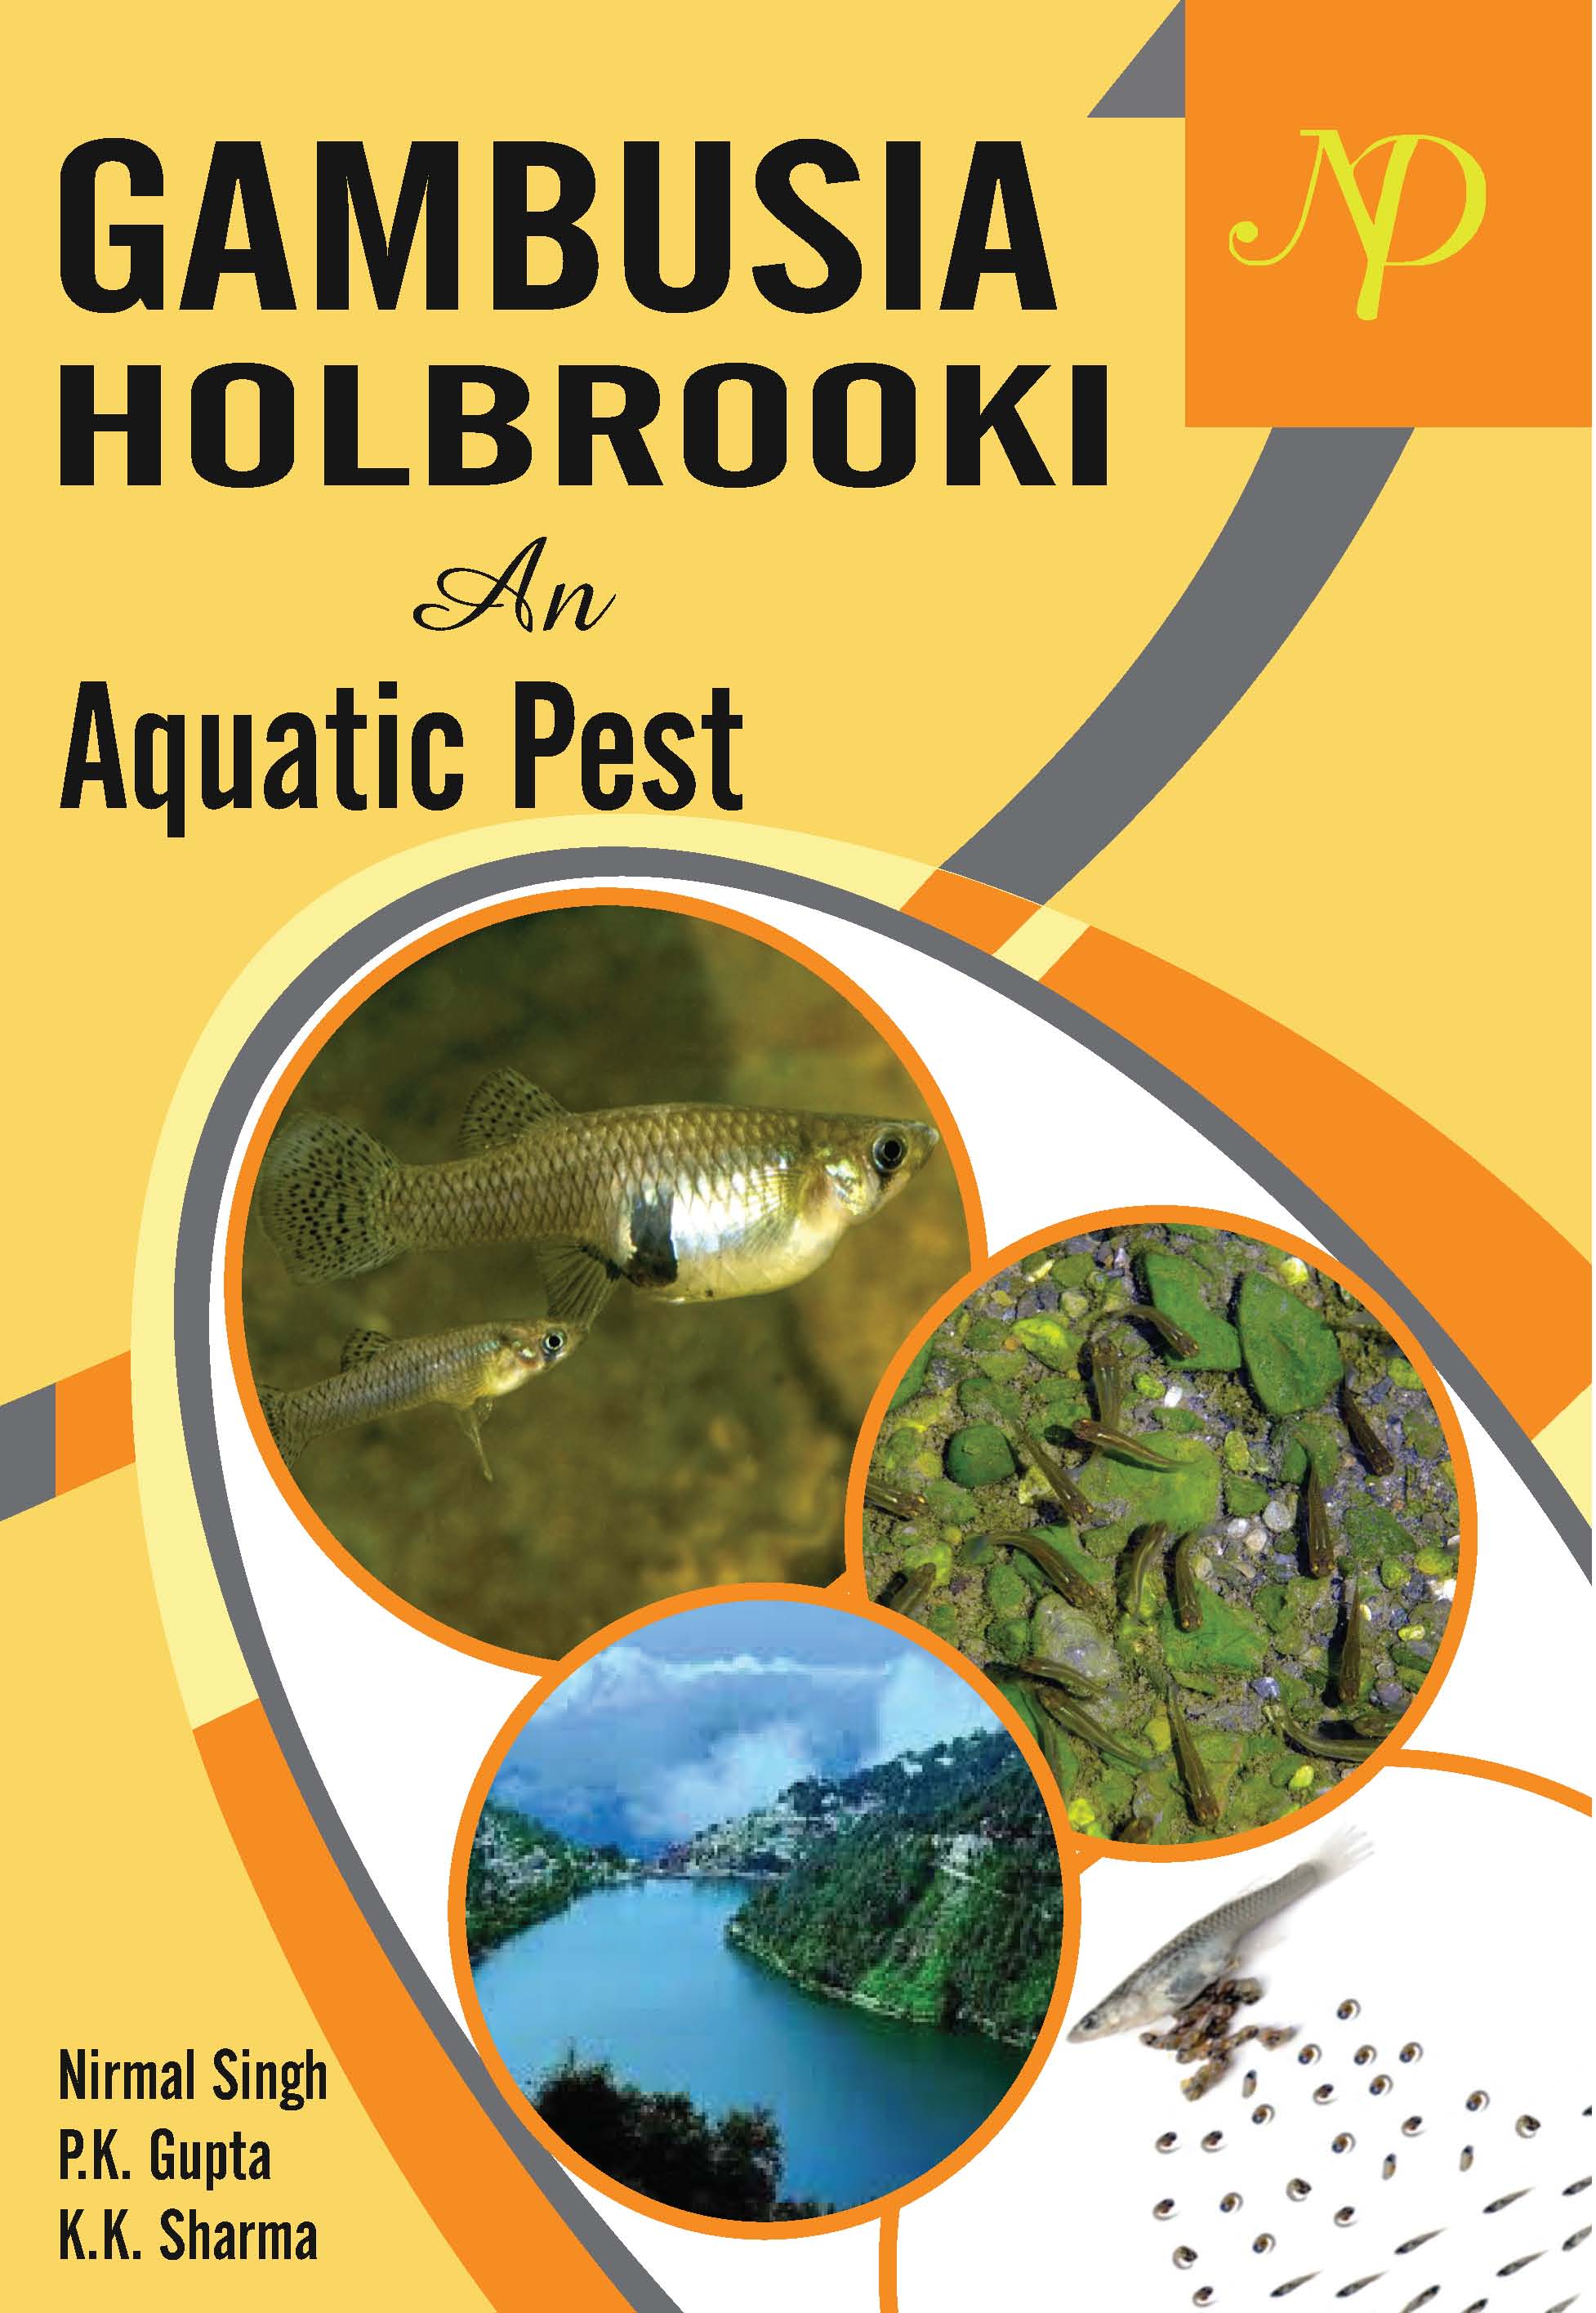 Gambusia Holbrooki and Aquatic Pest